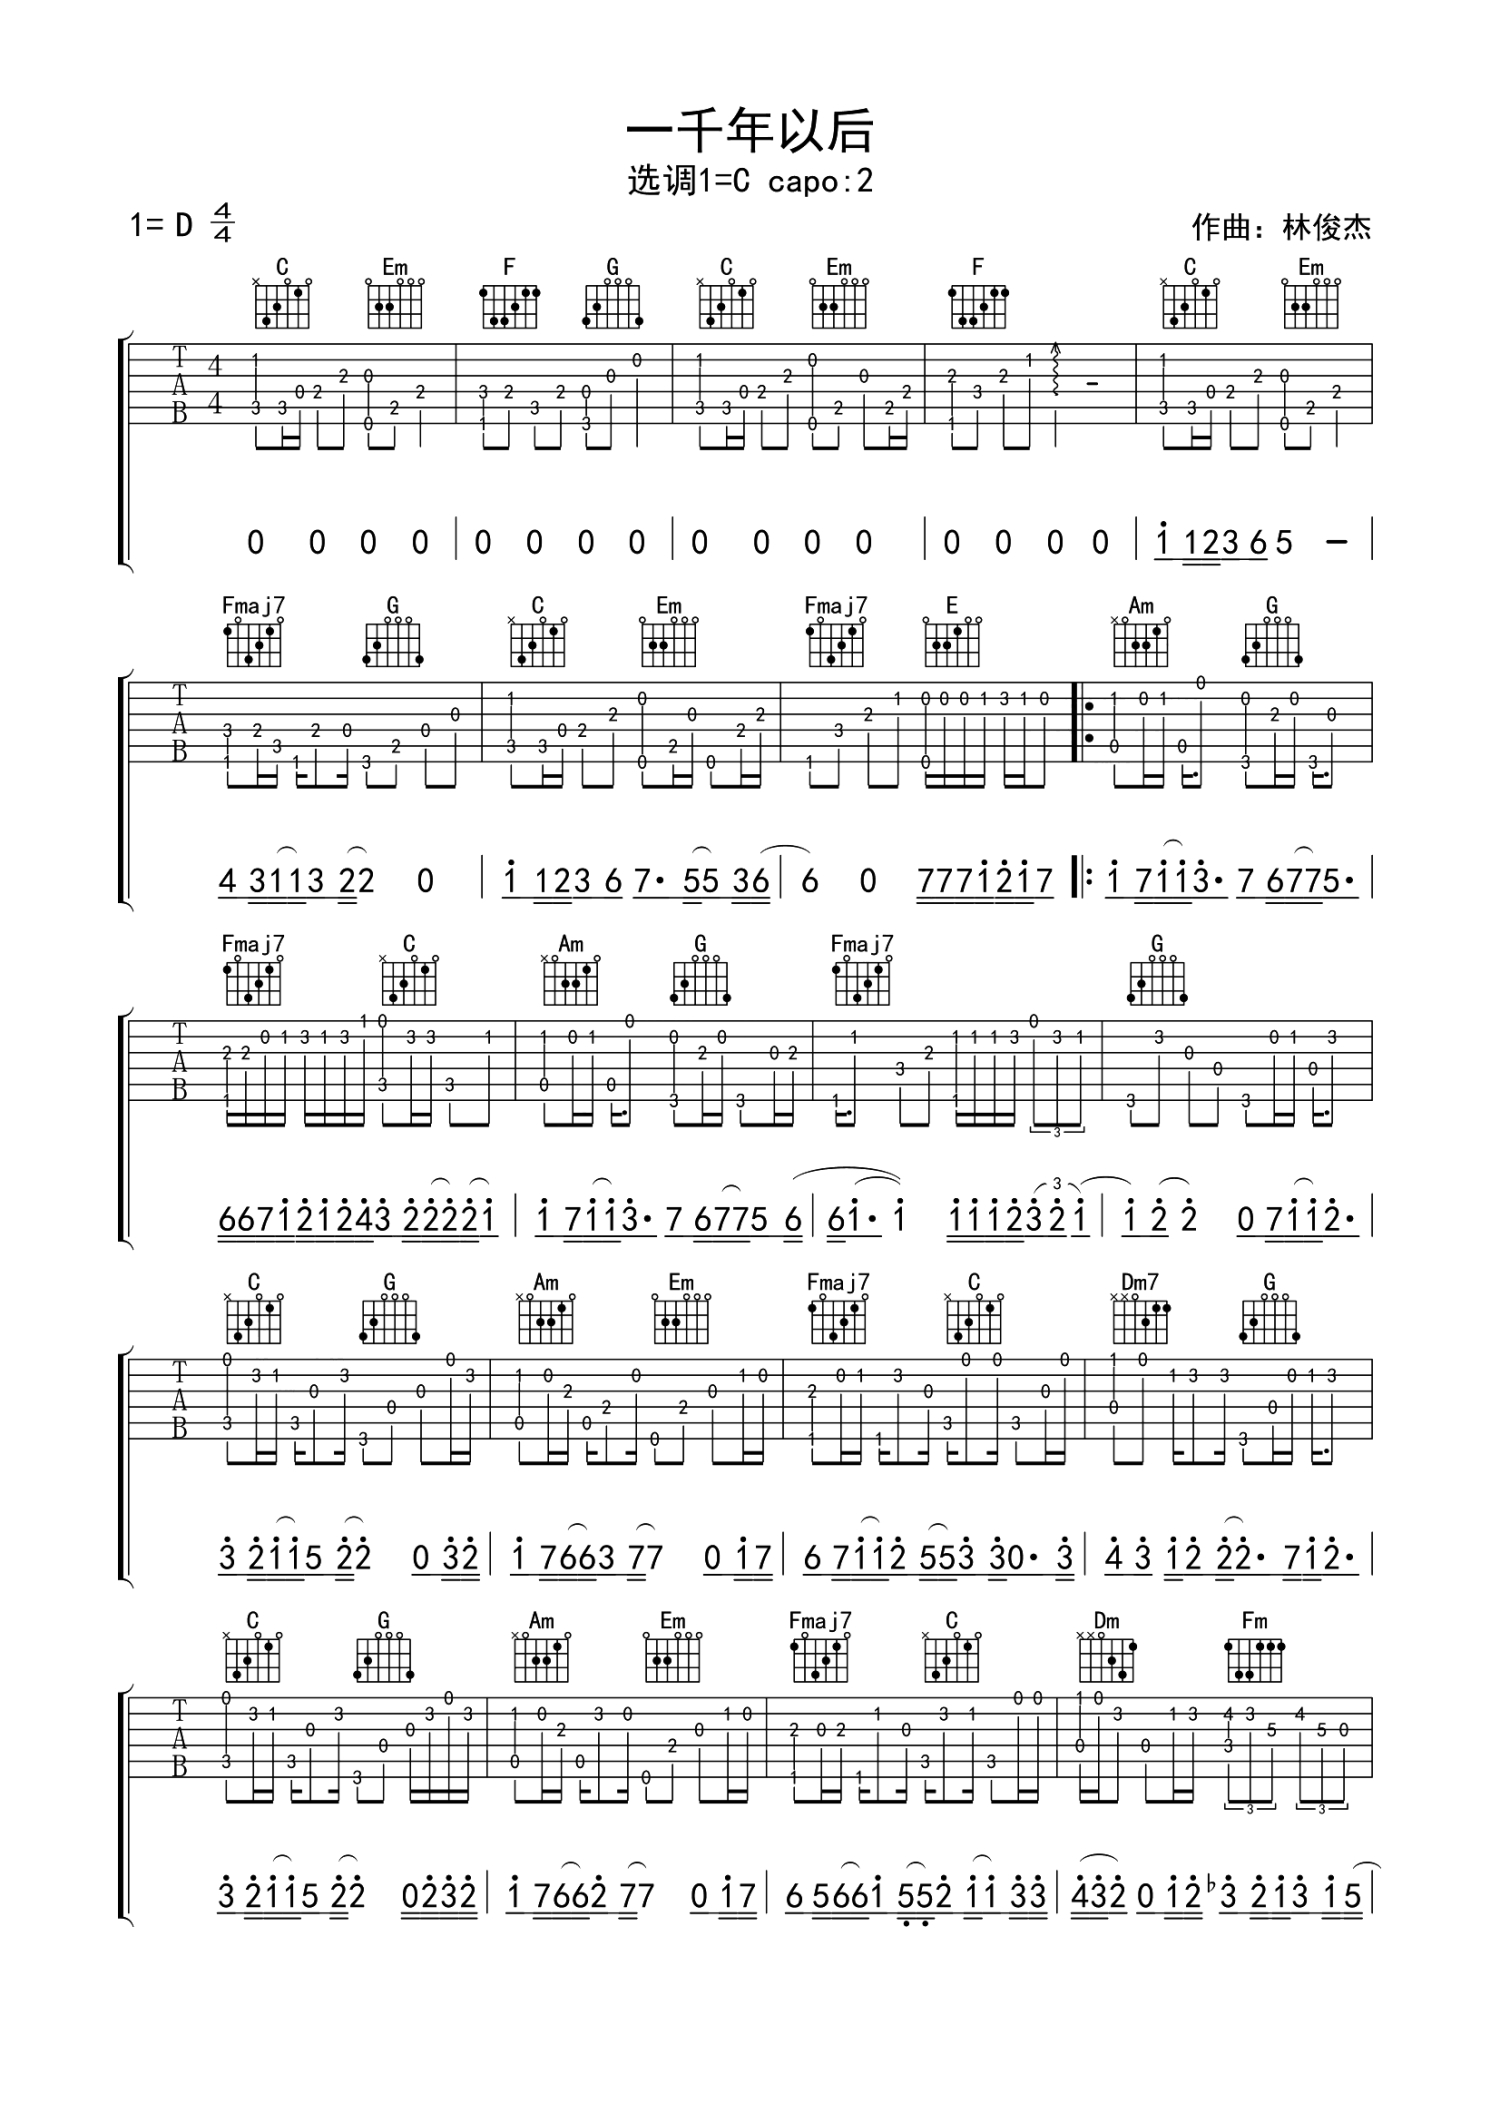 一千年以后吉他谱 - 林俊杰 - C调吉他弹唱谱 - 简单版 - 琴谱网